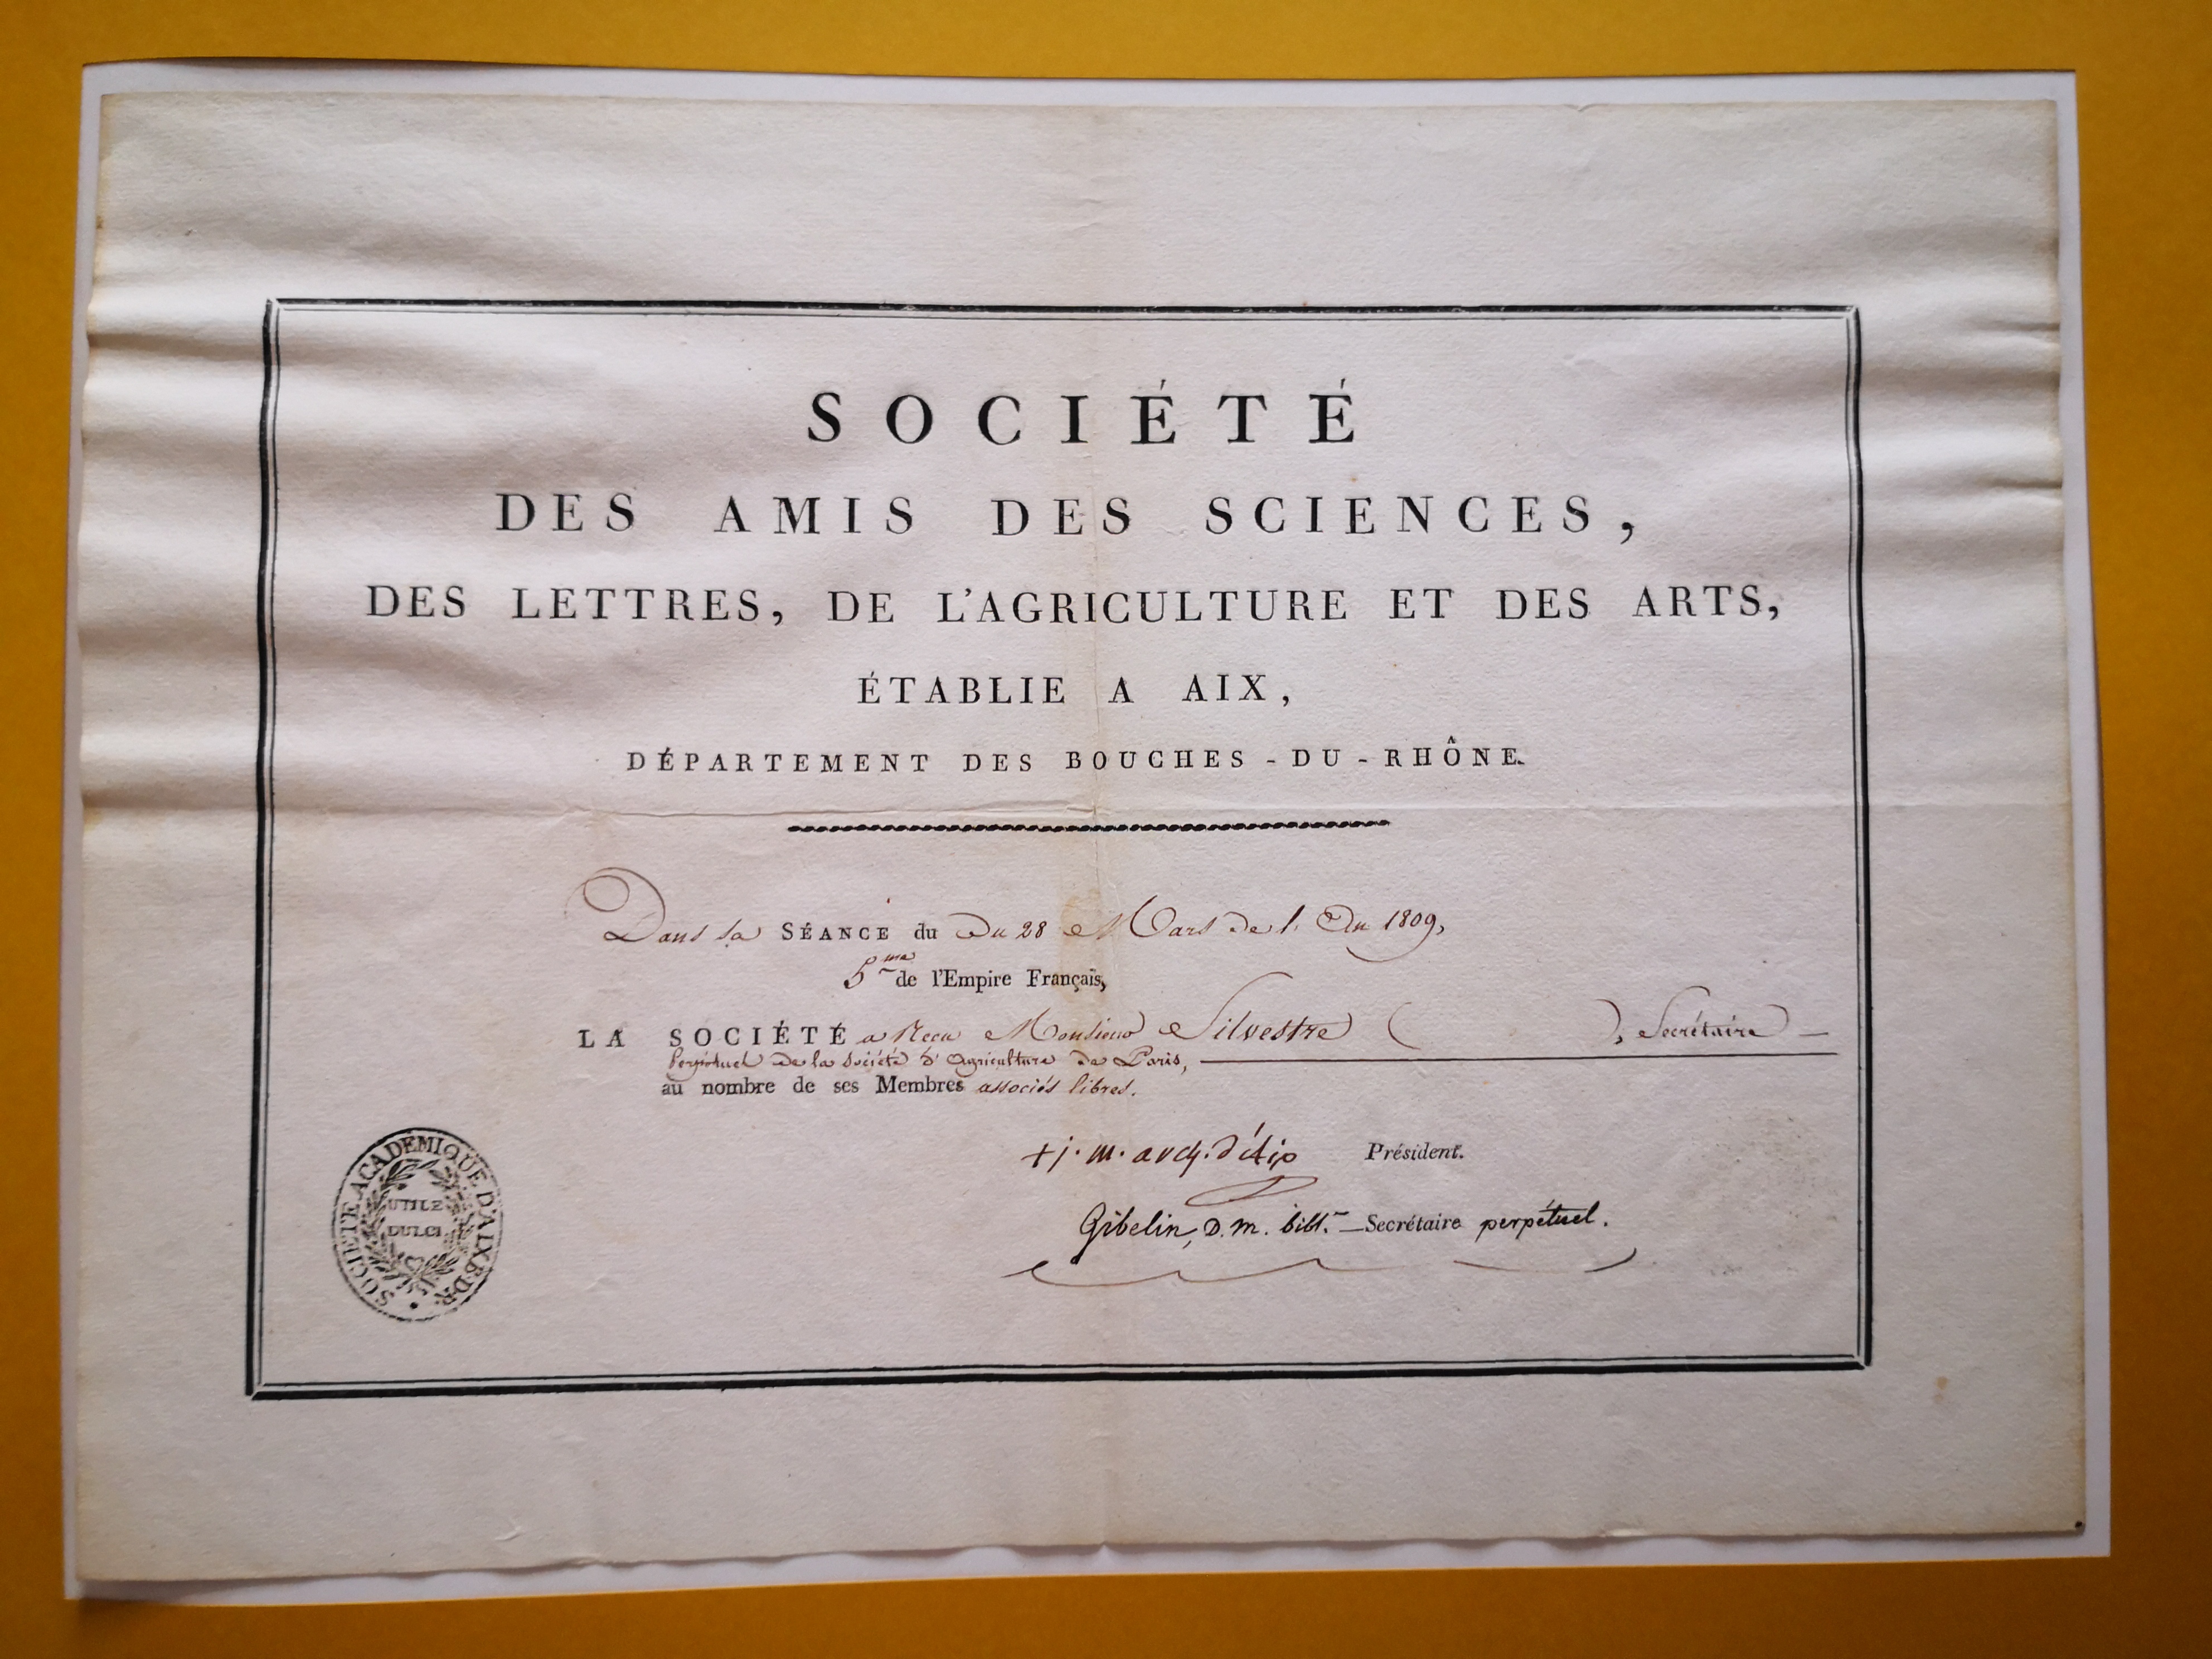  Diplôme de membre associé libre de la Société des Amis des Sciences, des Lettres, de l'Agriculture et des Arts d'Aix en Provence - Document 1